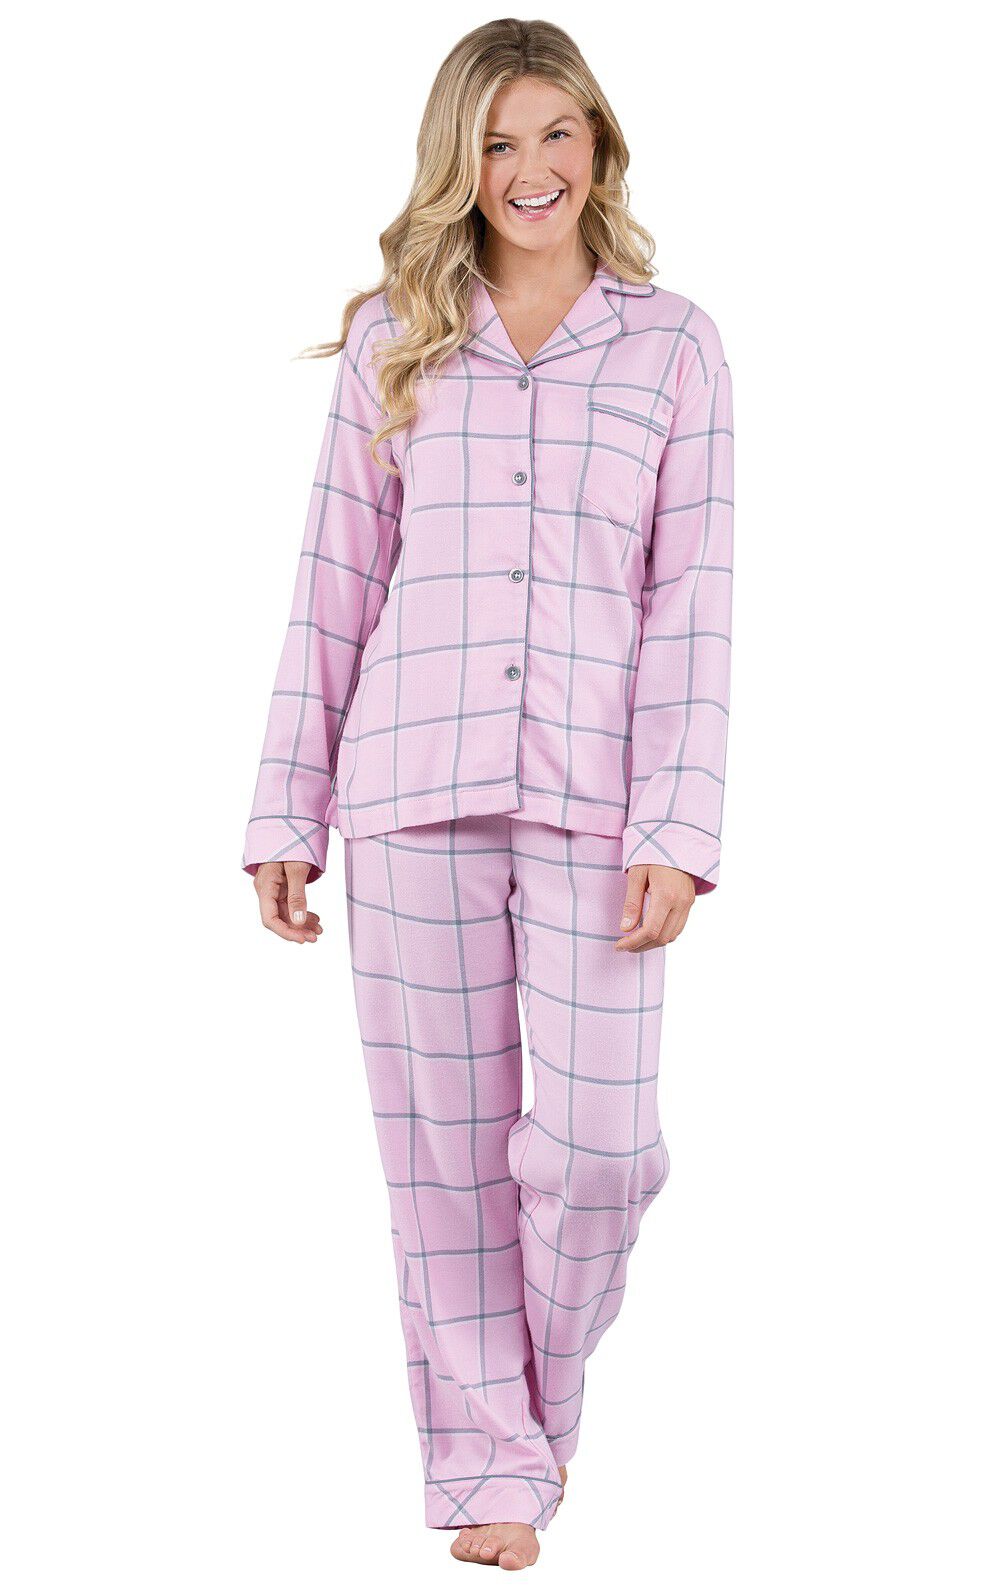 Womens Flannel Pajamas Sets PajamaGram Pajamas for Women Soft